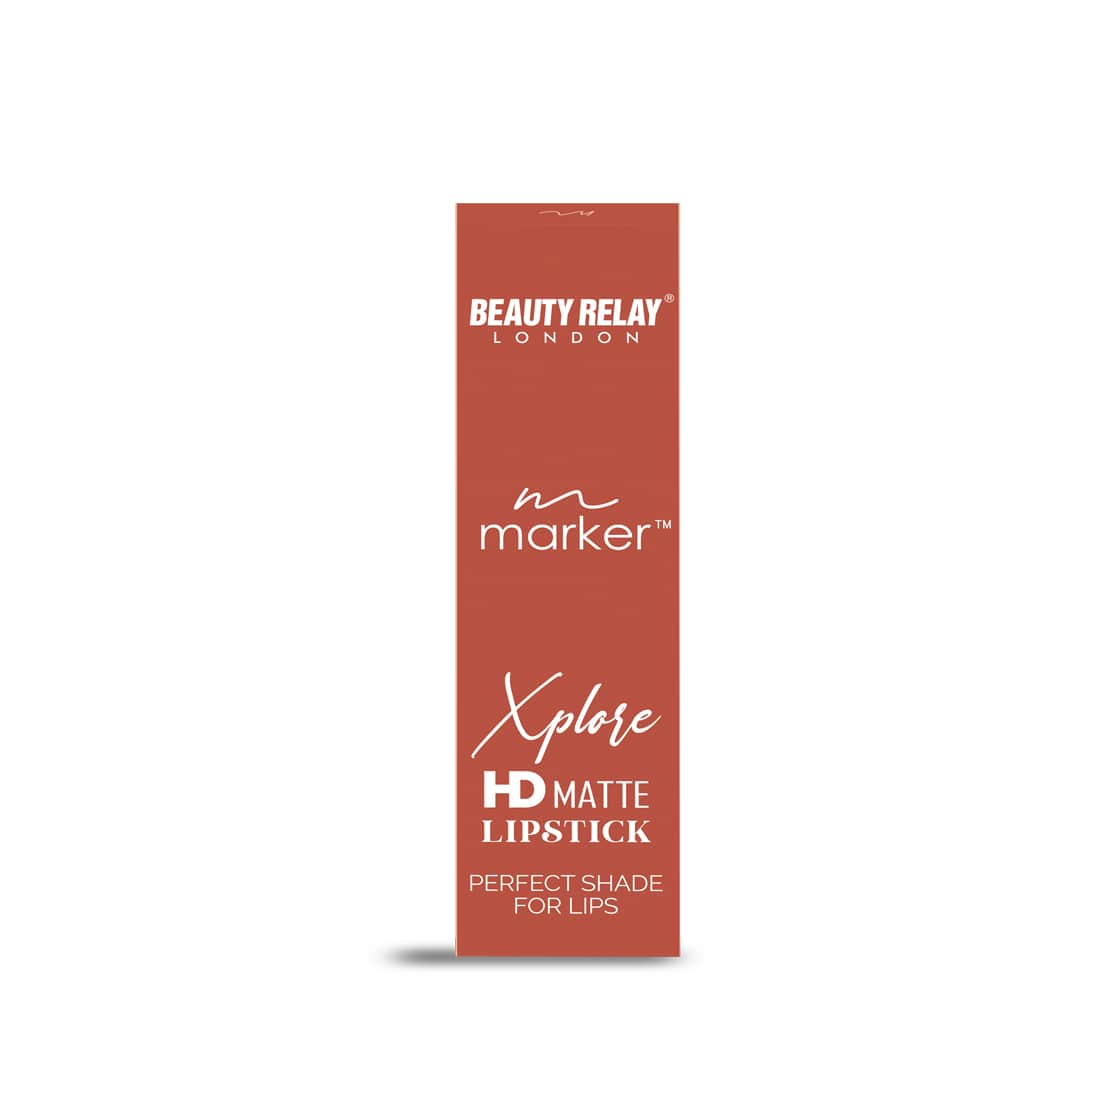 HD Matte Lipstick - Moisturizing Lip Makeup